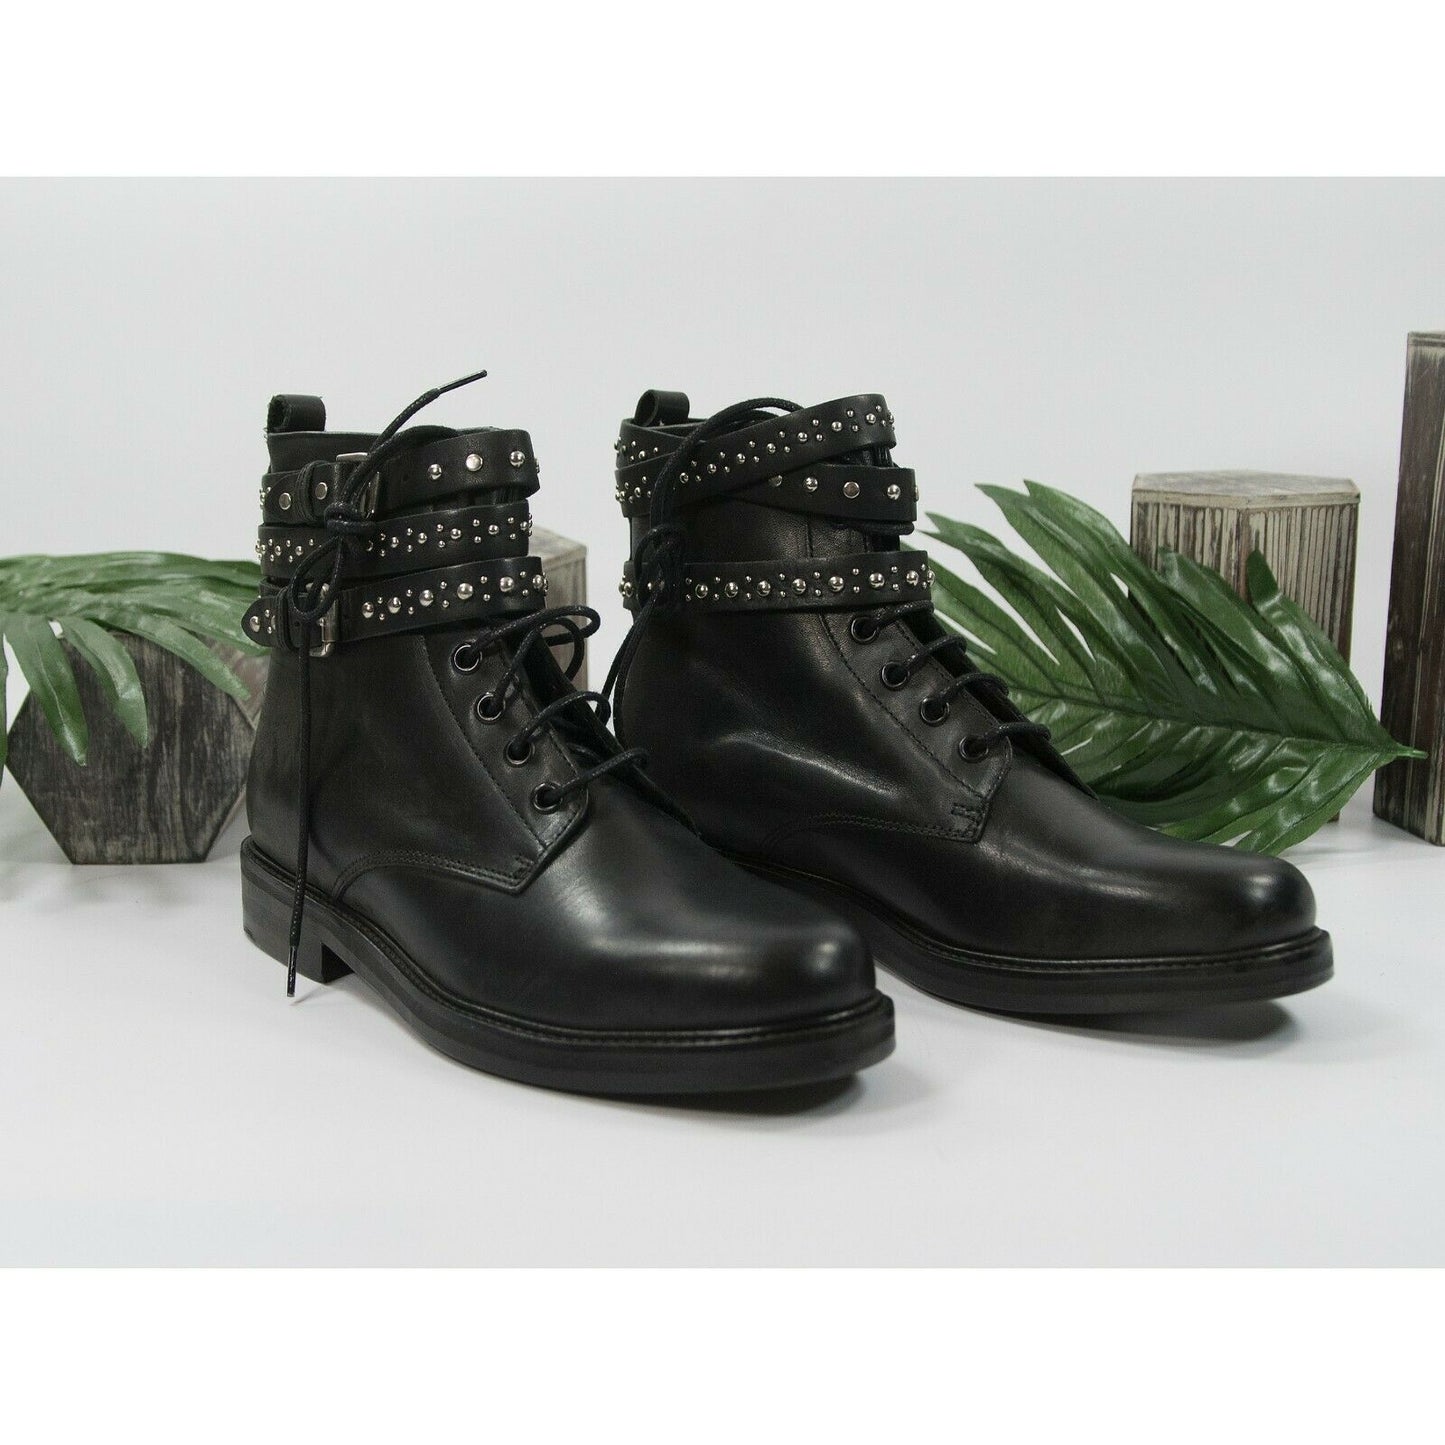 Maje Flint Black Leather Moto Punk Lace Up Ankle Boot Shoes Sz 37 7